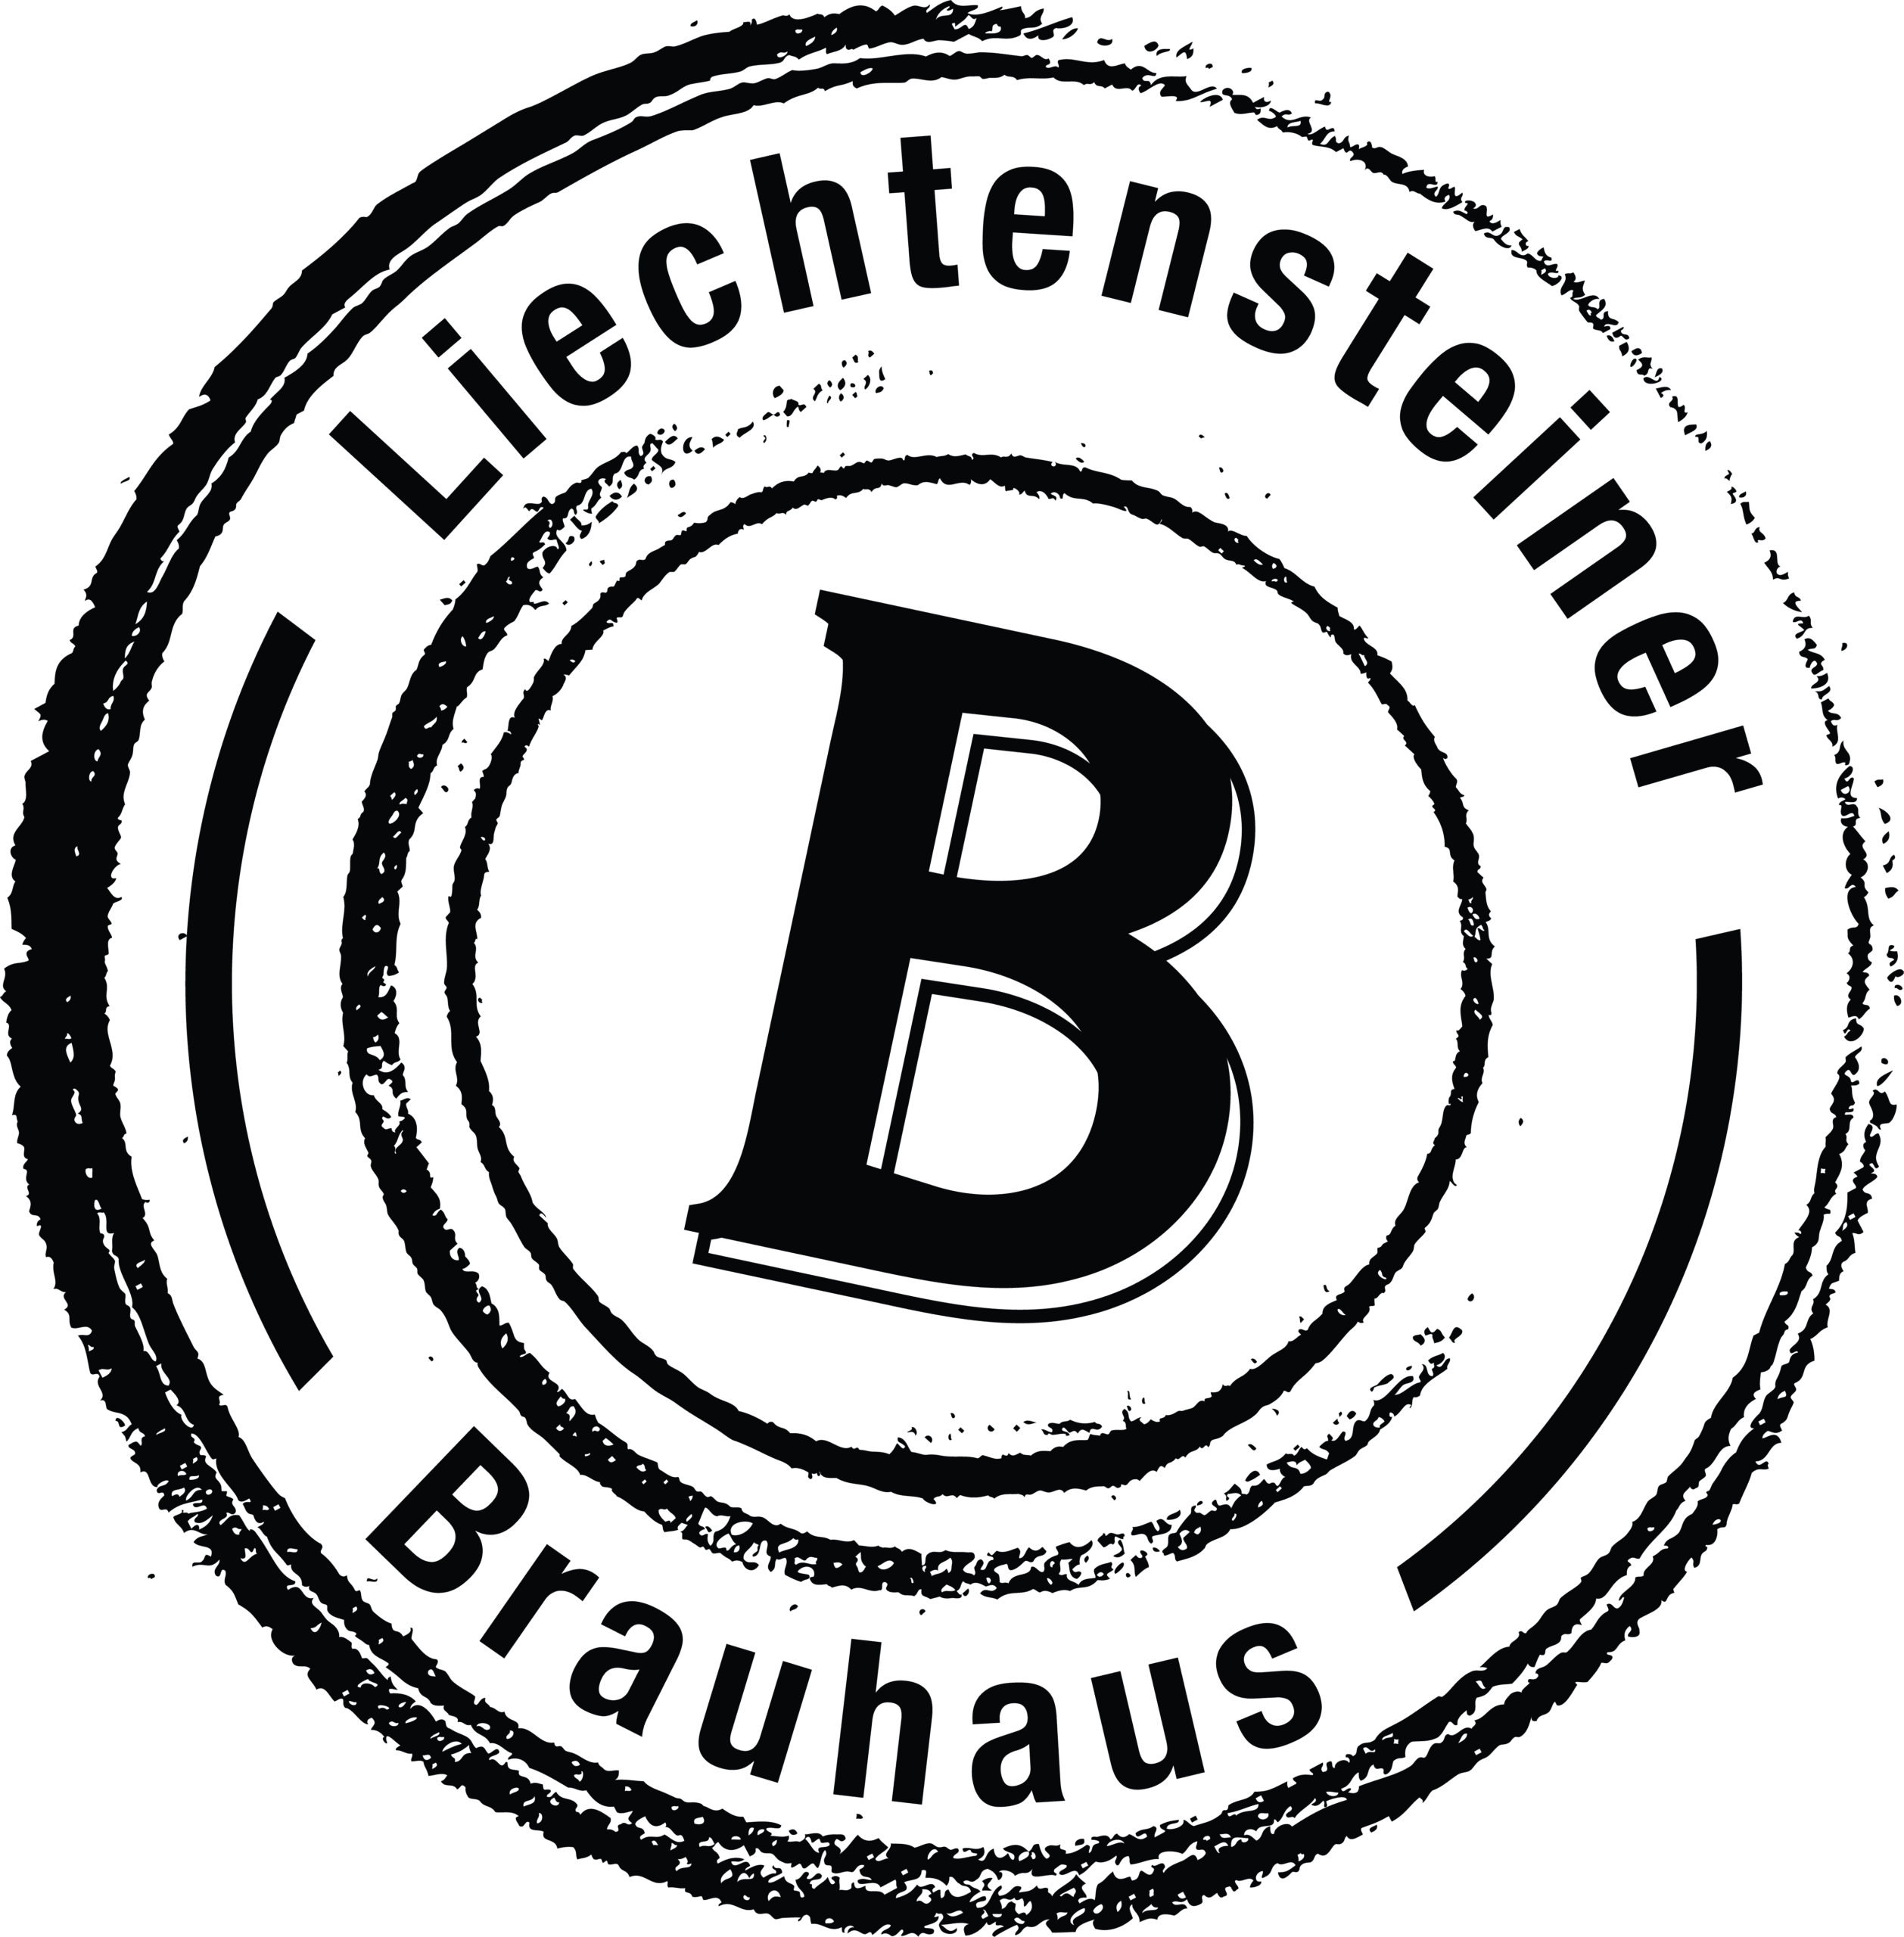 Brauhaus Liechtensteiner Logo